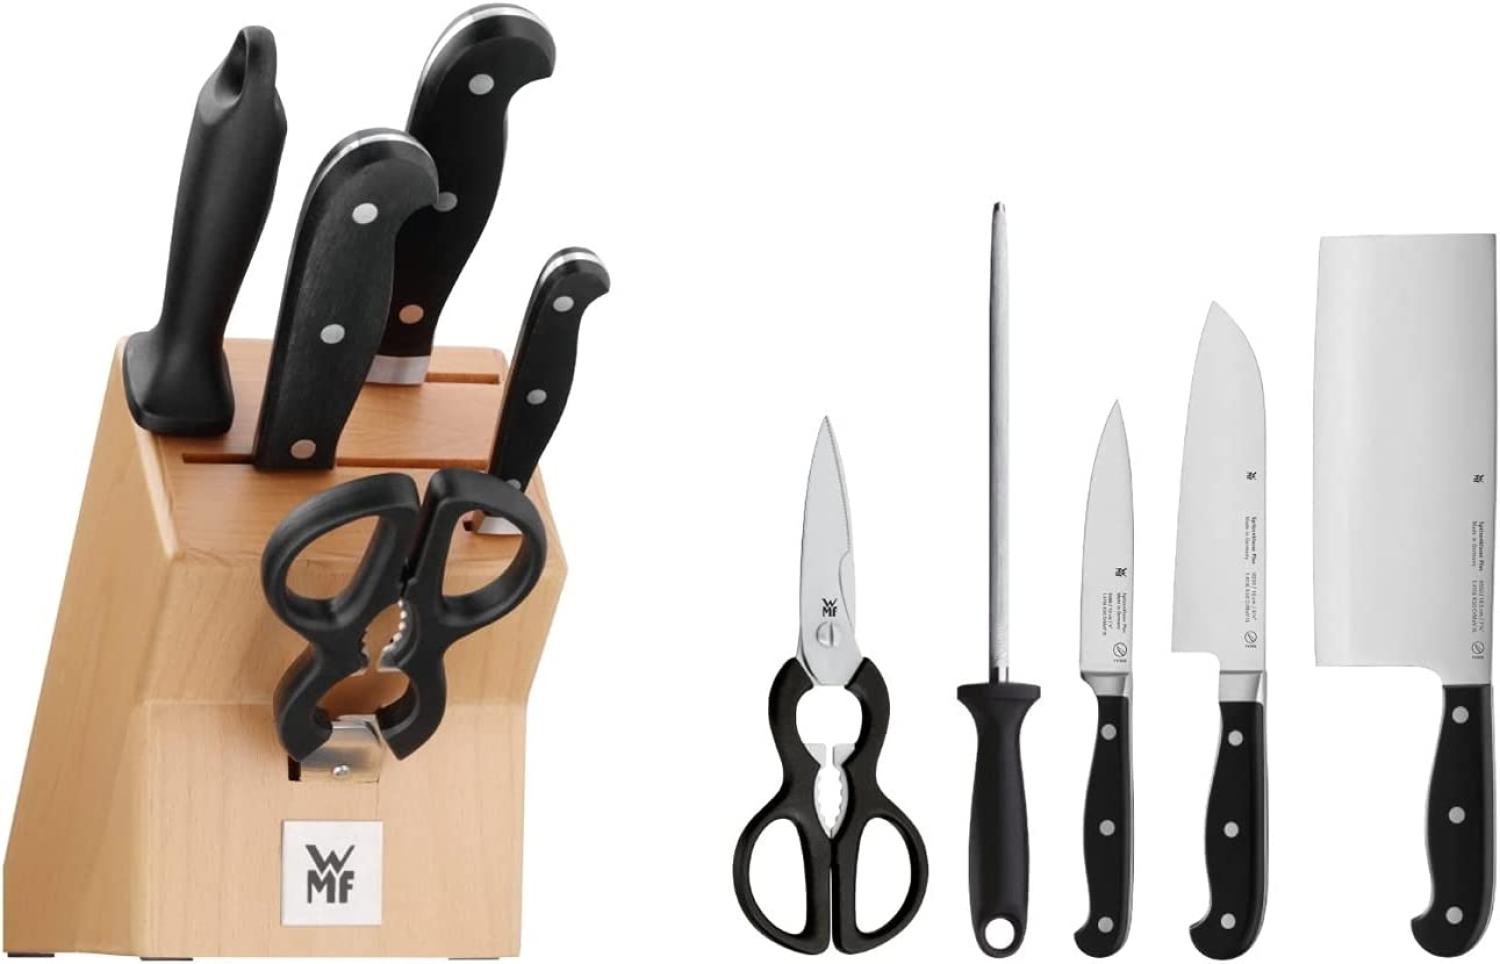 WMF Spitzenklasse Plus Messerblock mit Messerset, 6-teilig, 3 Messer geschmiedet, 1 Schere, 1 Wetzstahl, 1 Block aus Buchenholz, Performance Cut, Spezialklingenstahl Bild 1